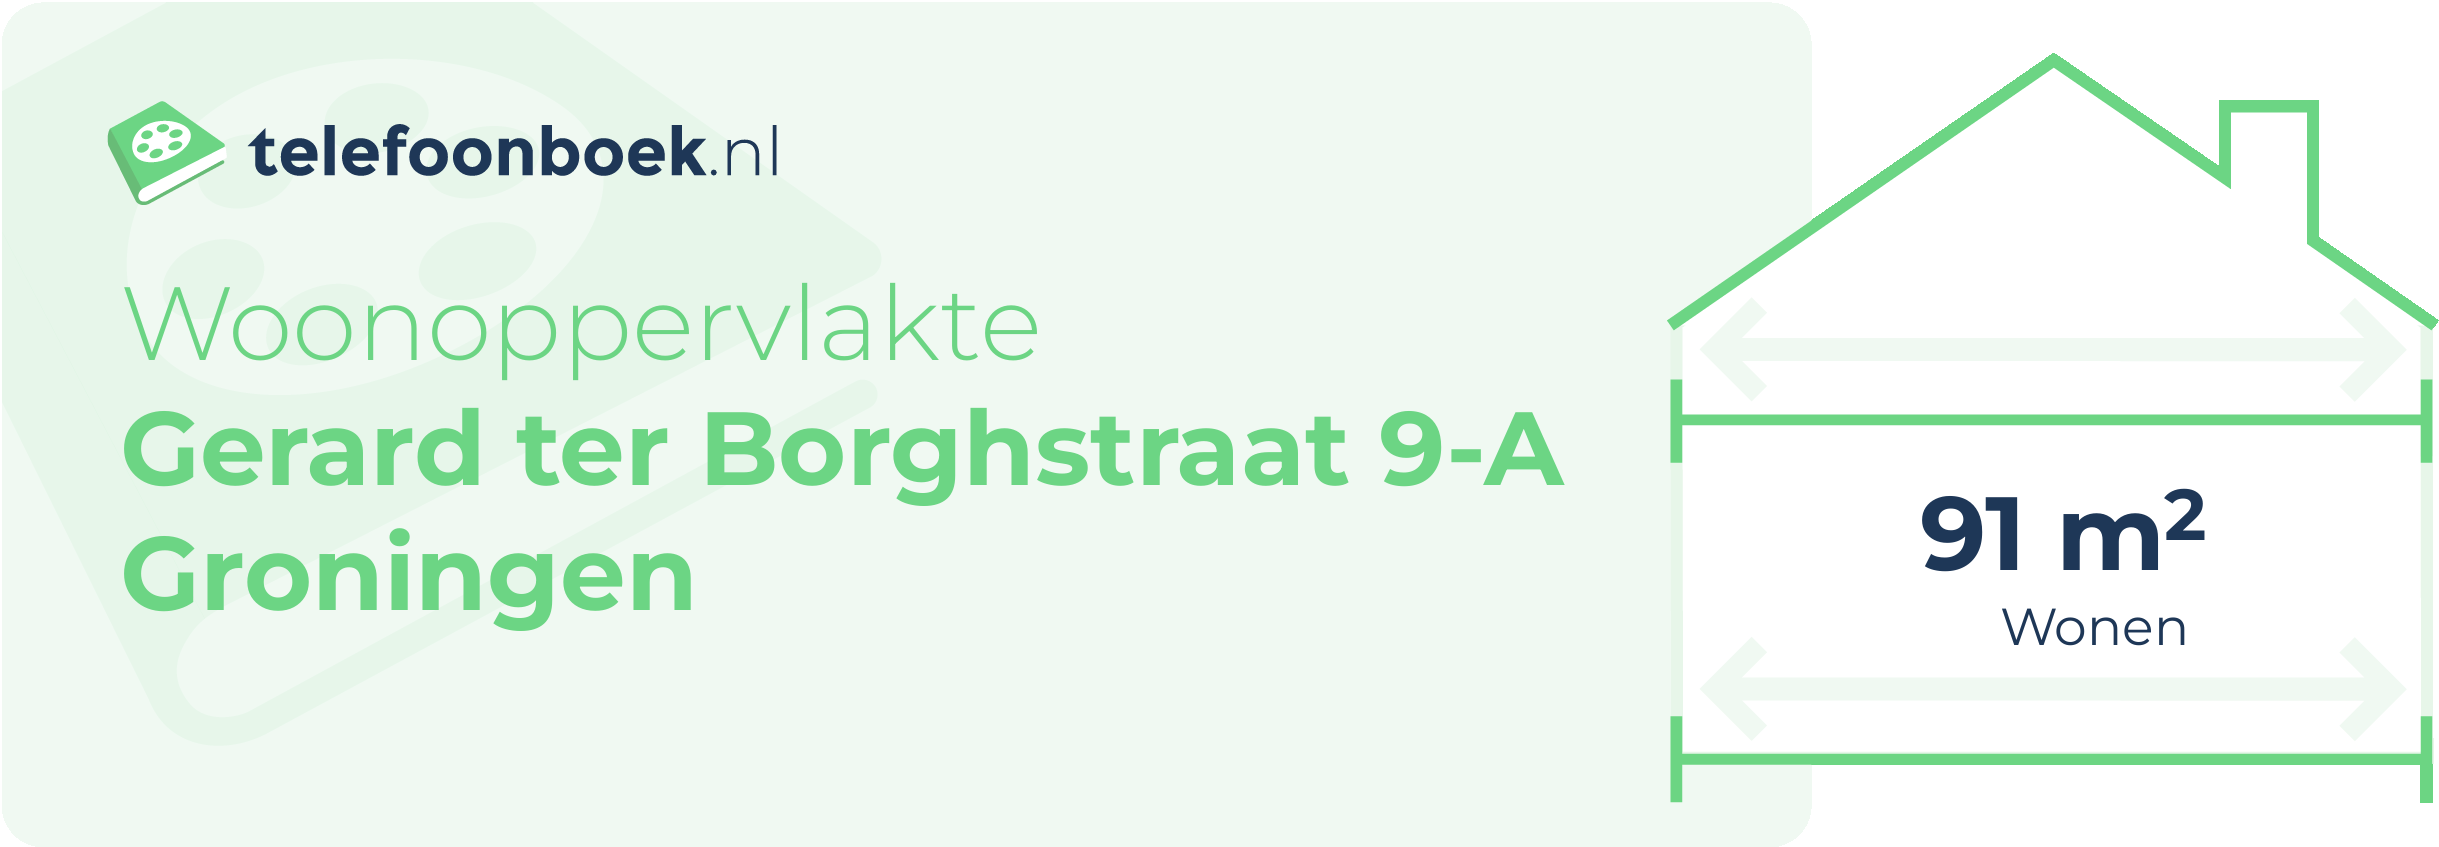 Woonoppervlakte Gerard Ter Borghstraat 9-A Groningen